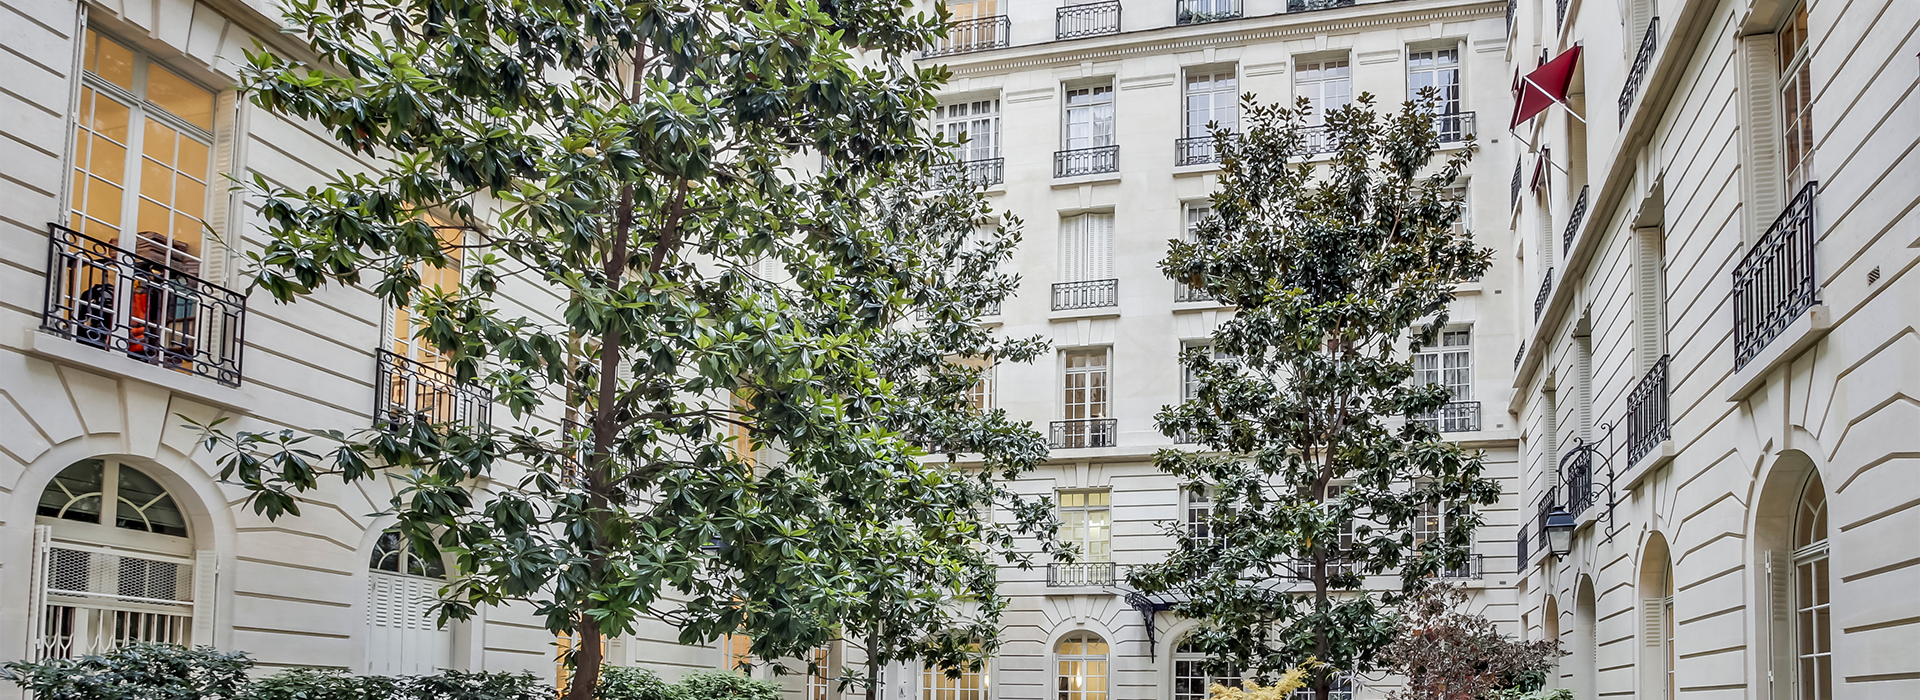 Achat vente location appartement hôtel particulier Paris